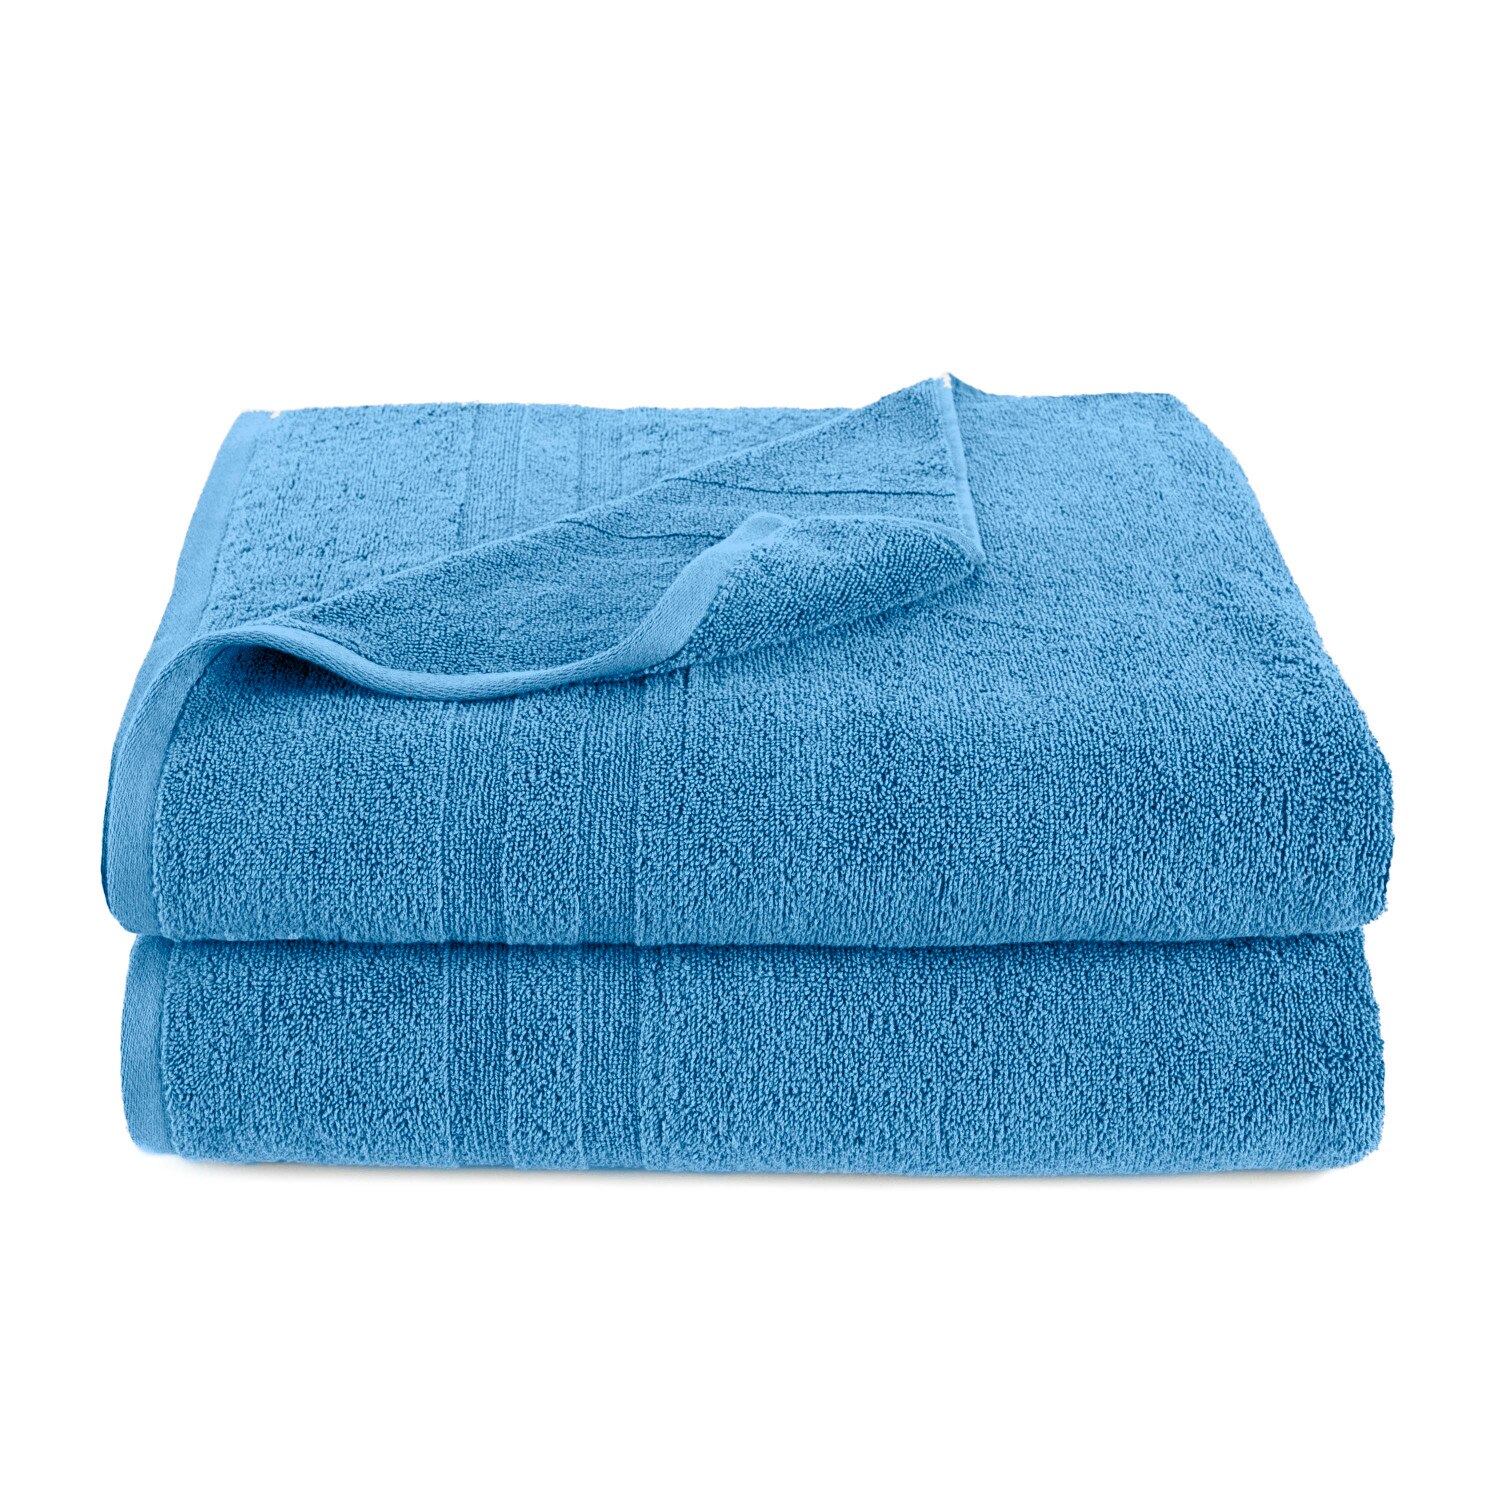 Martex Purity Solid 2-Piece Towel Set